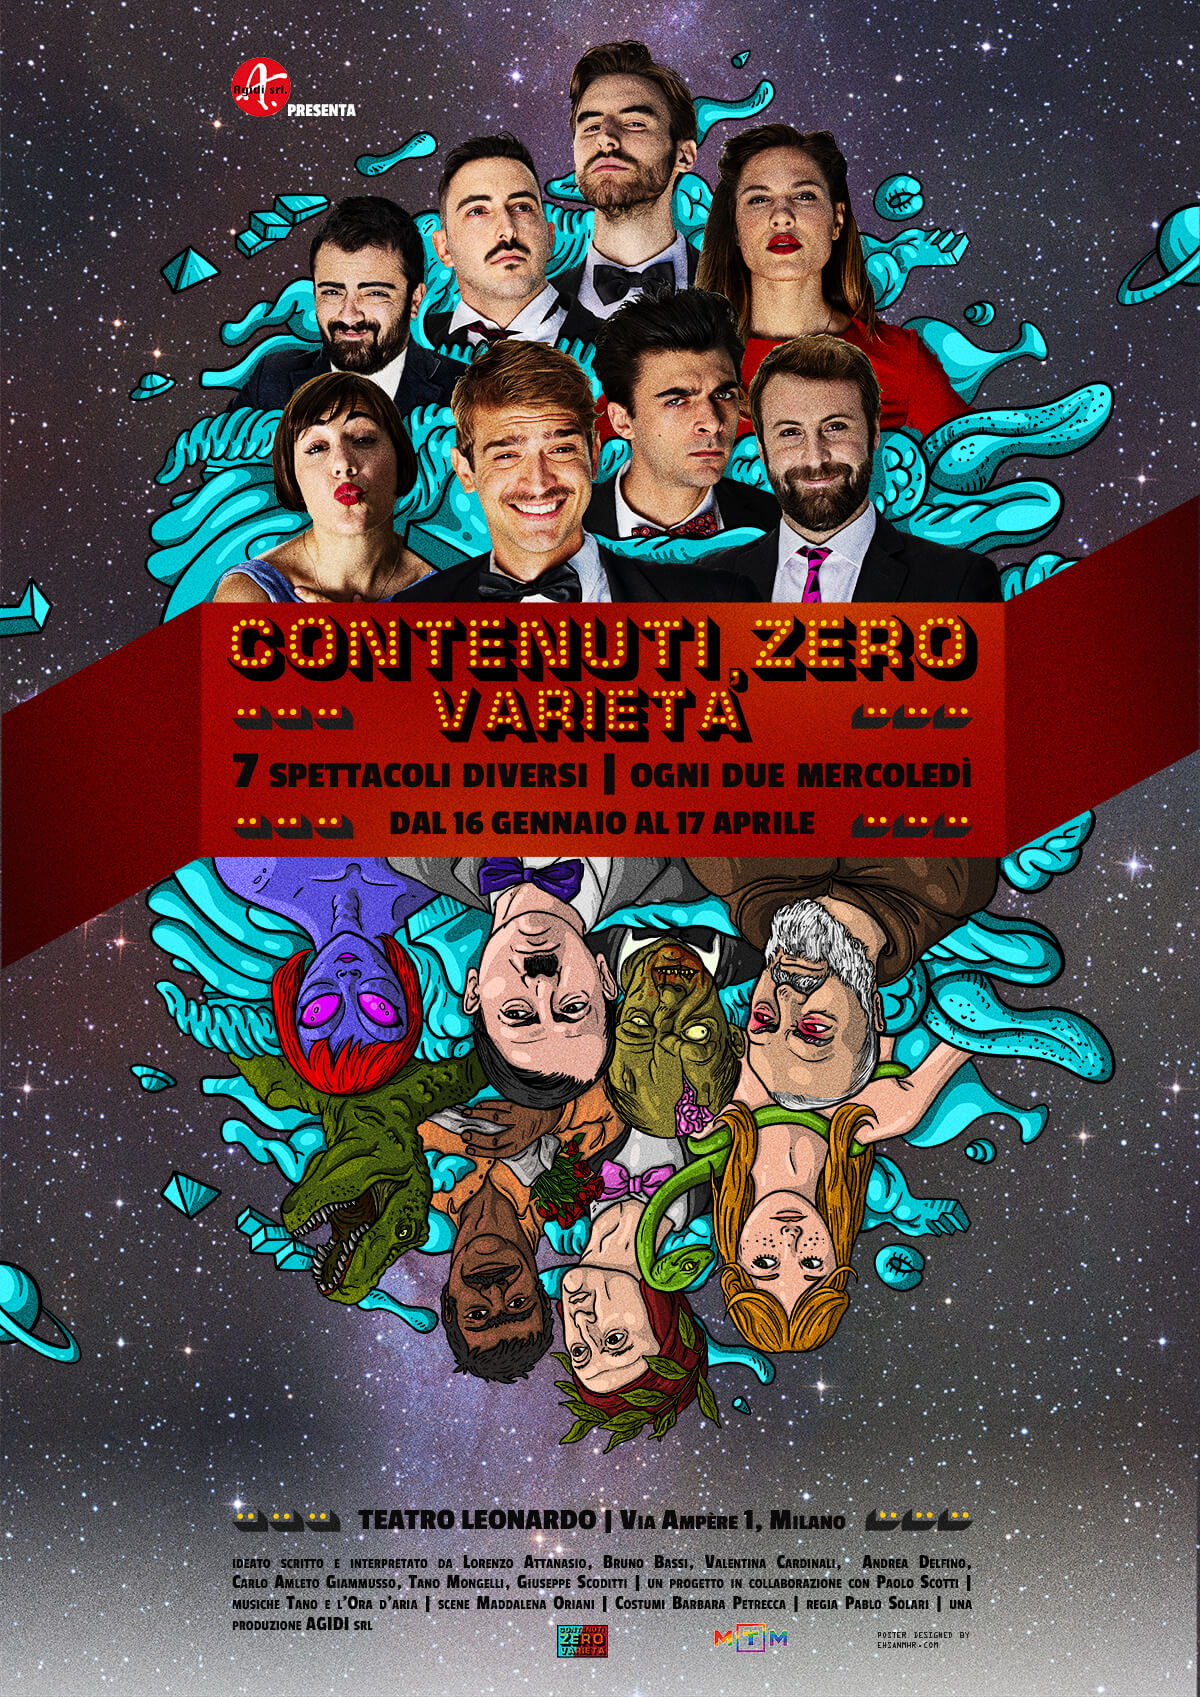 Annagaia Marchioro all'ultima puntata di Contenuti Zero, l'intervista - poster10 generico 1 - Gay.it